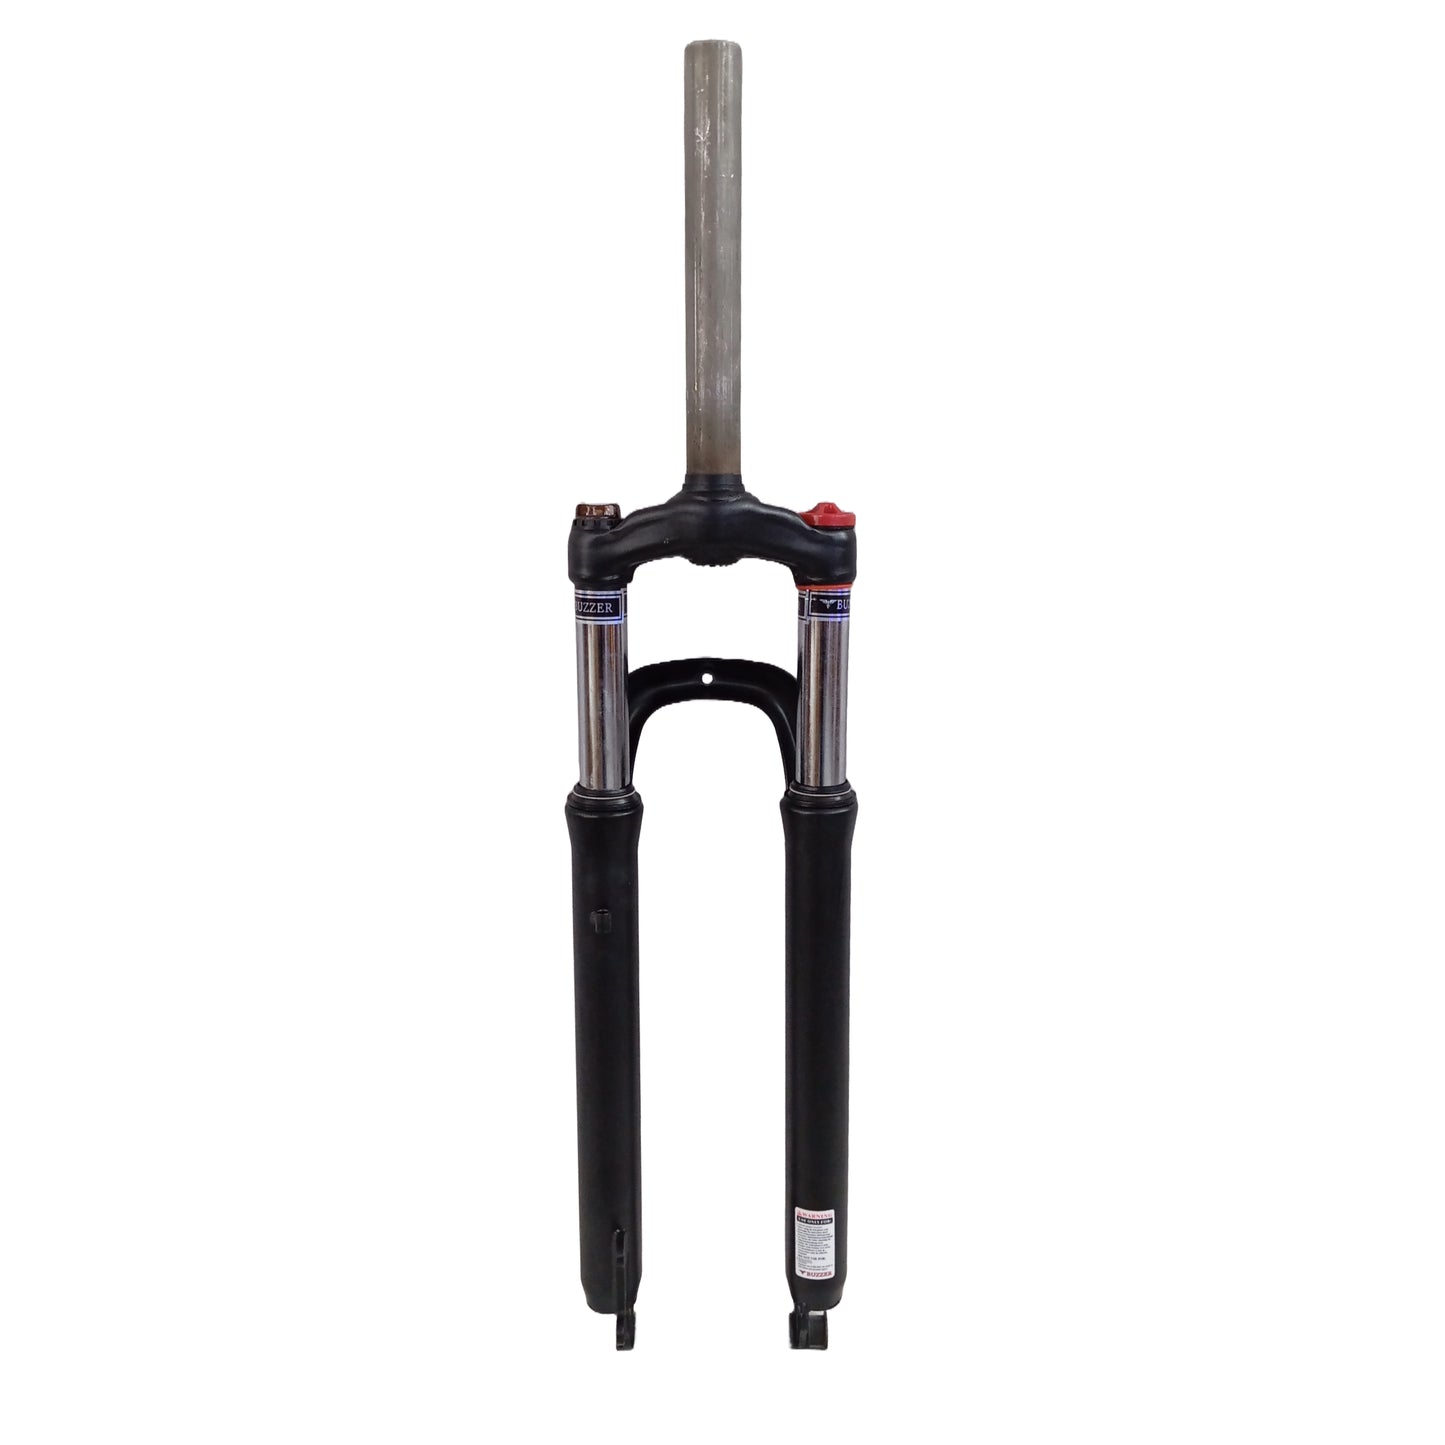 Steel Suspension Lockout Preload Fork 50mm Travel  at best price